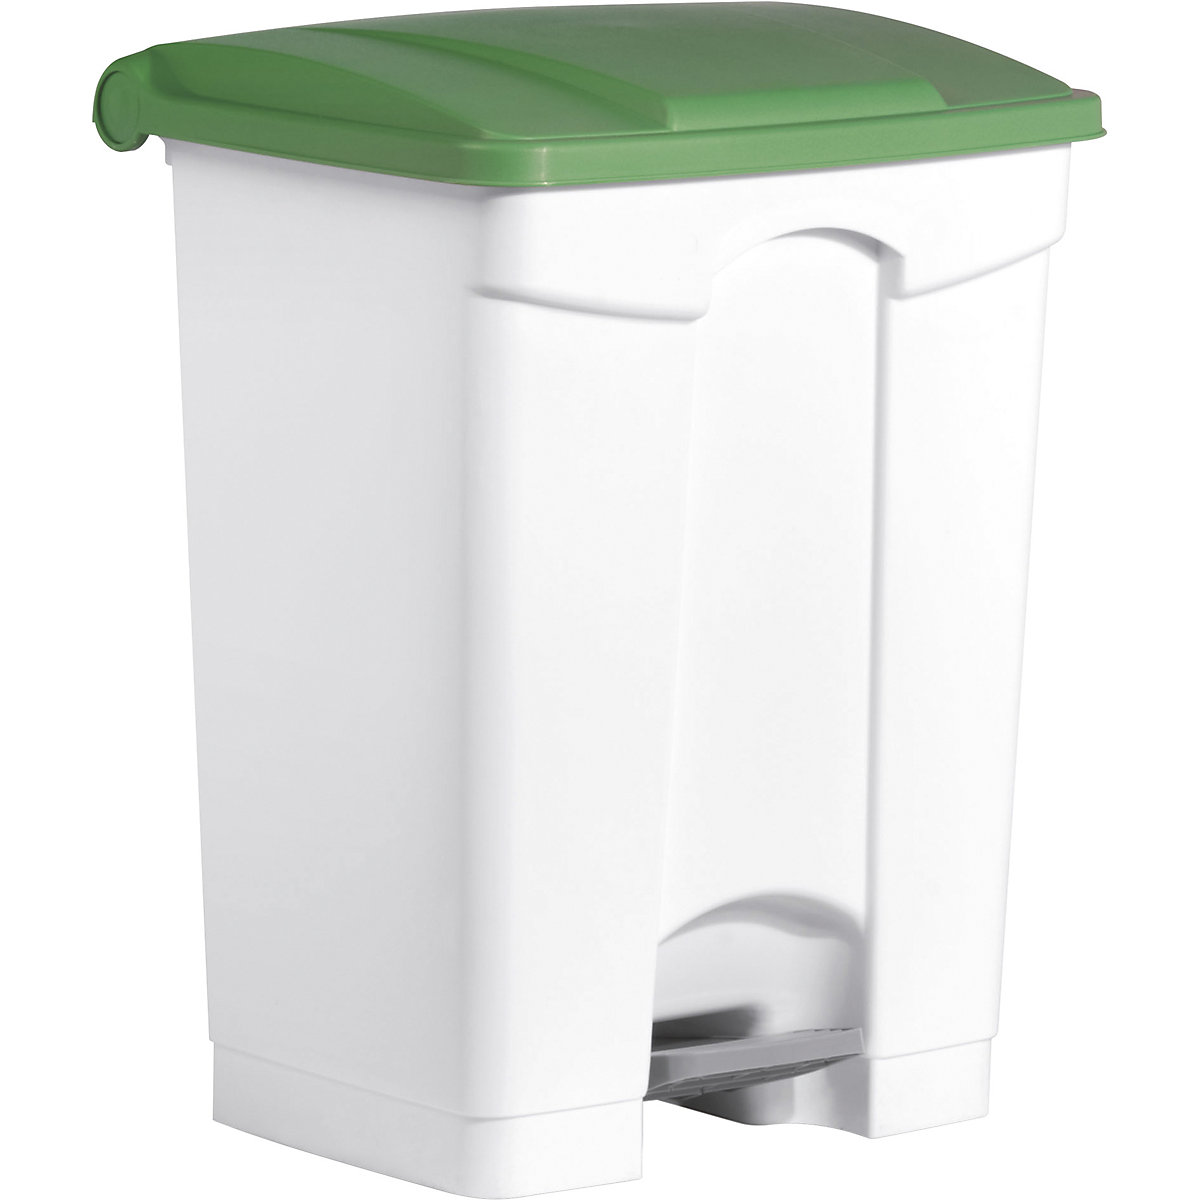 Spremnik za otpad s papučicom – helit, volumen 70 l, ŠxVxD 500 x 670 x 410 mm, u bijeloj boji, poklopac u zelenoj boji-5